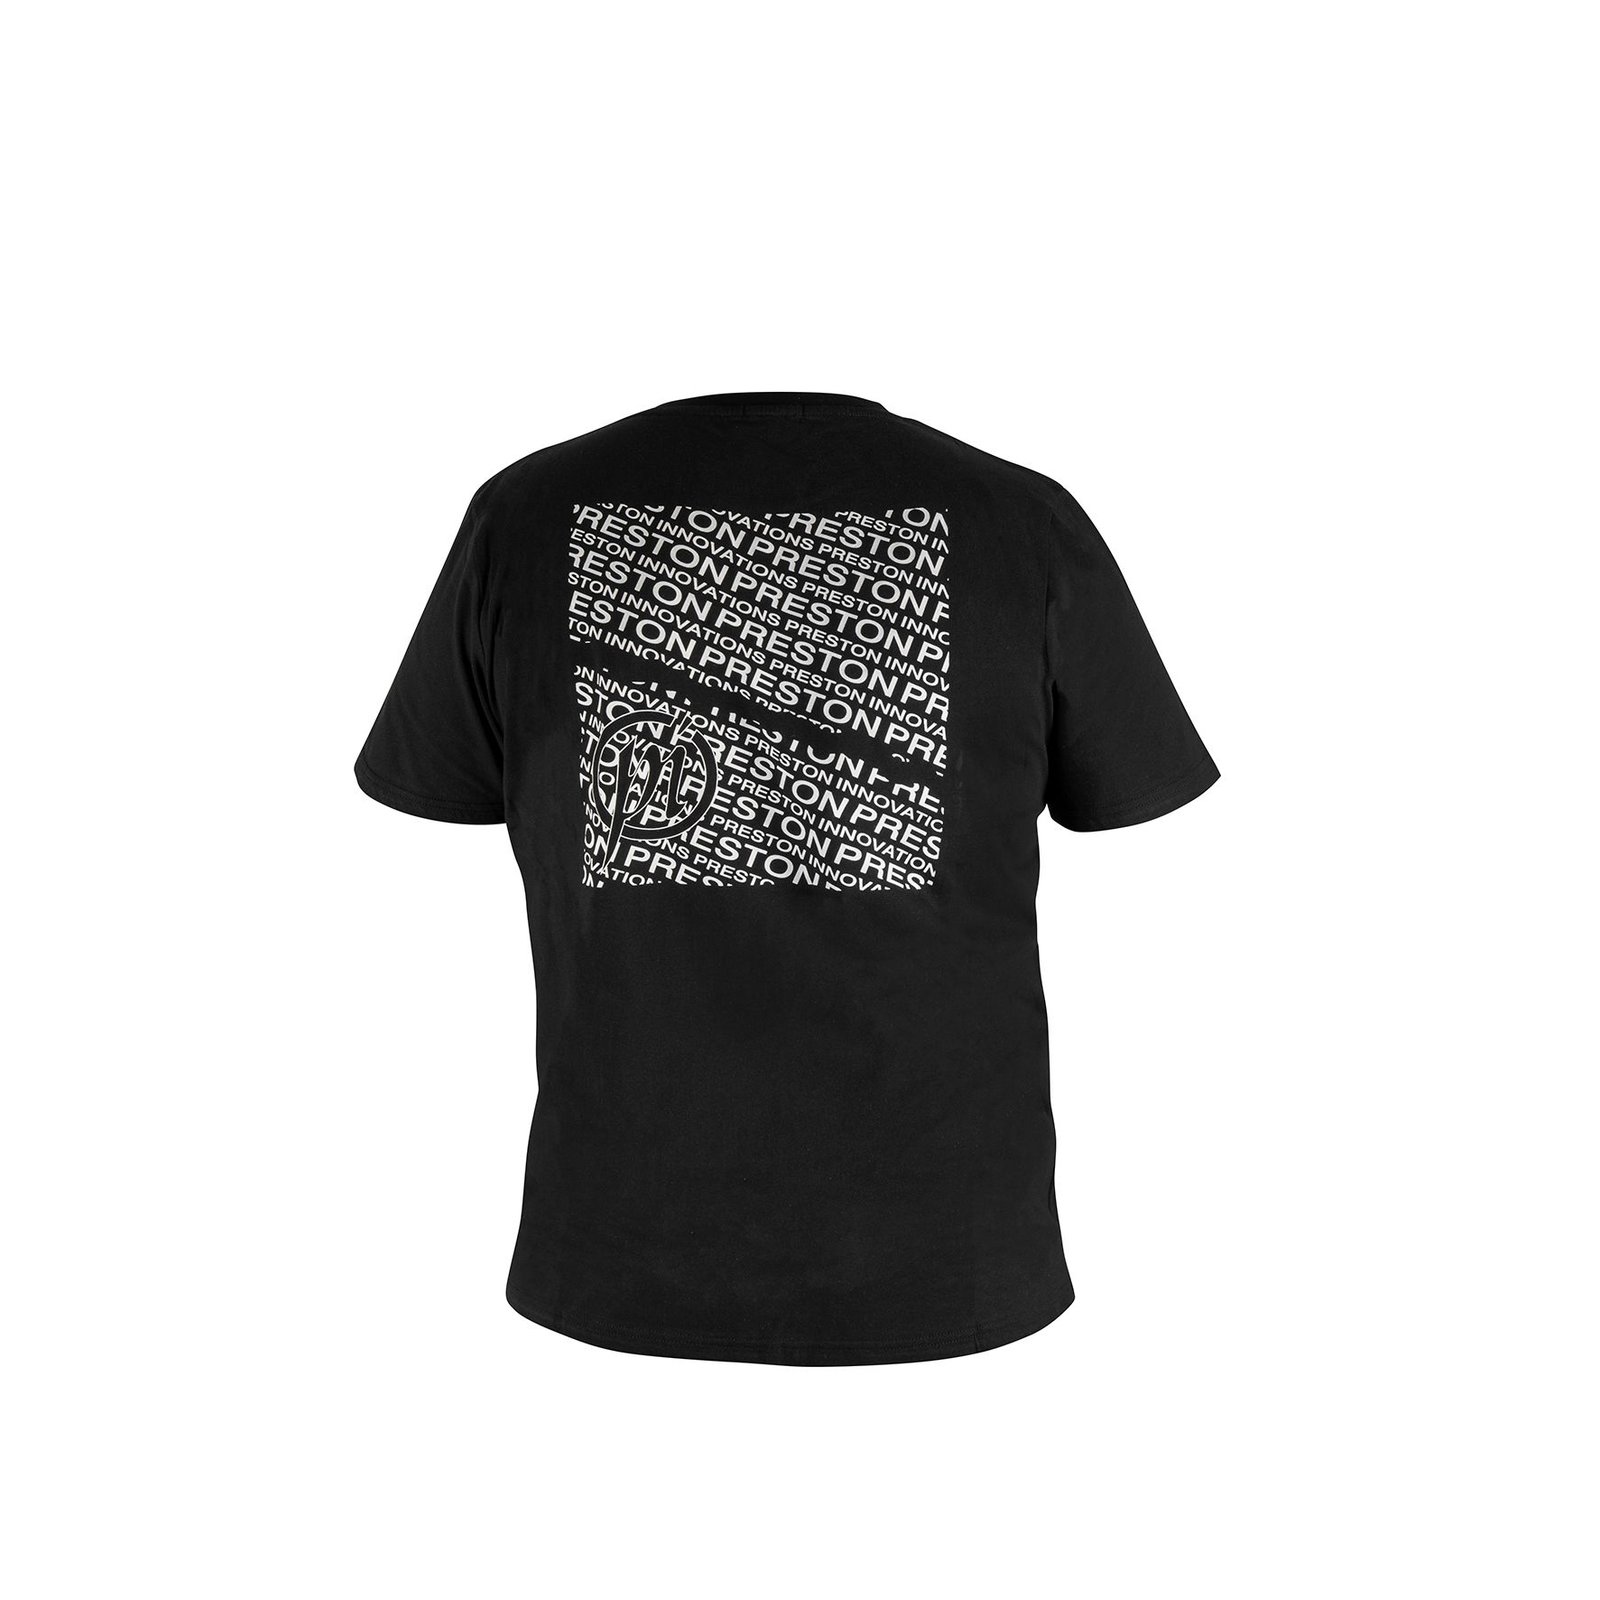 Preston Black T-Shirt - Medium